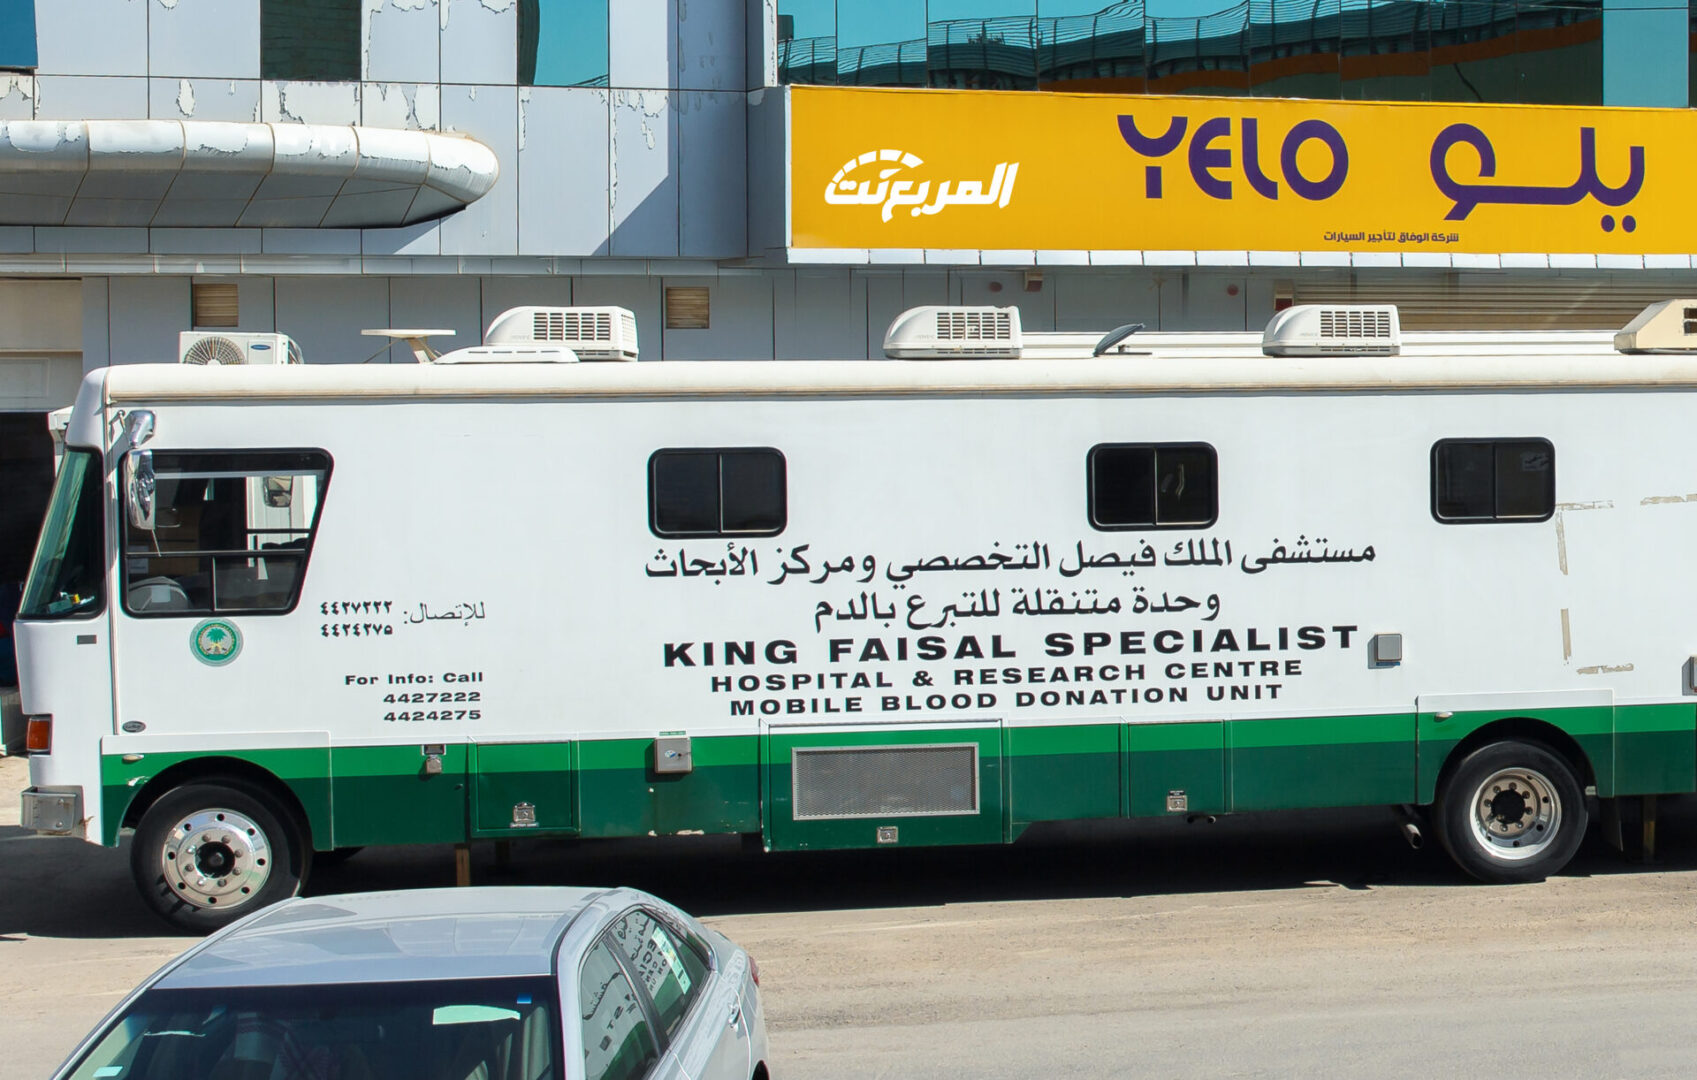 بالتعاون مع مستشفى الملك فيصل التخصصي "يلو" تقيم حملة تبرع بالدم لتعزيز الجانب التطوعي لدى منسوبيها 10